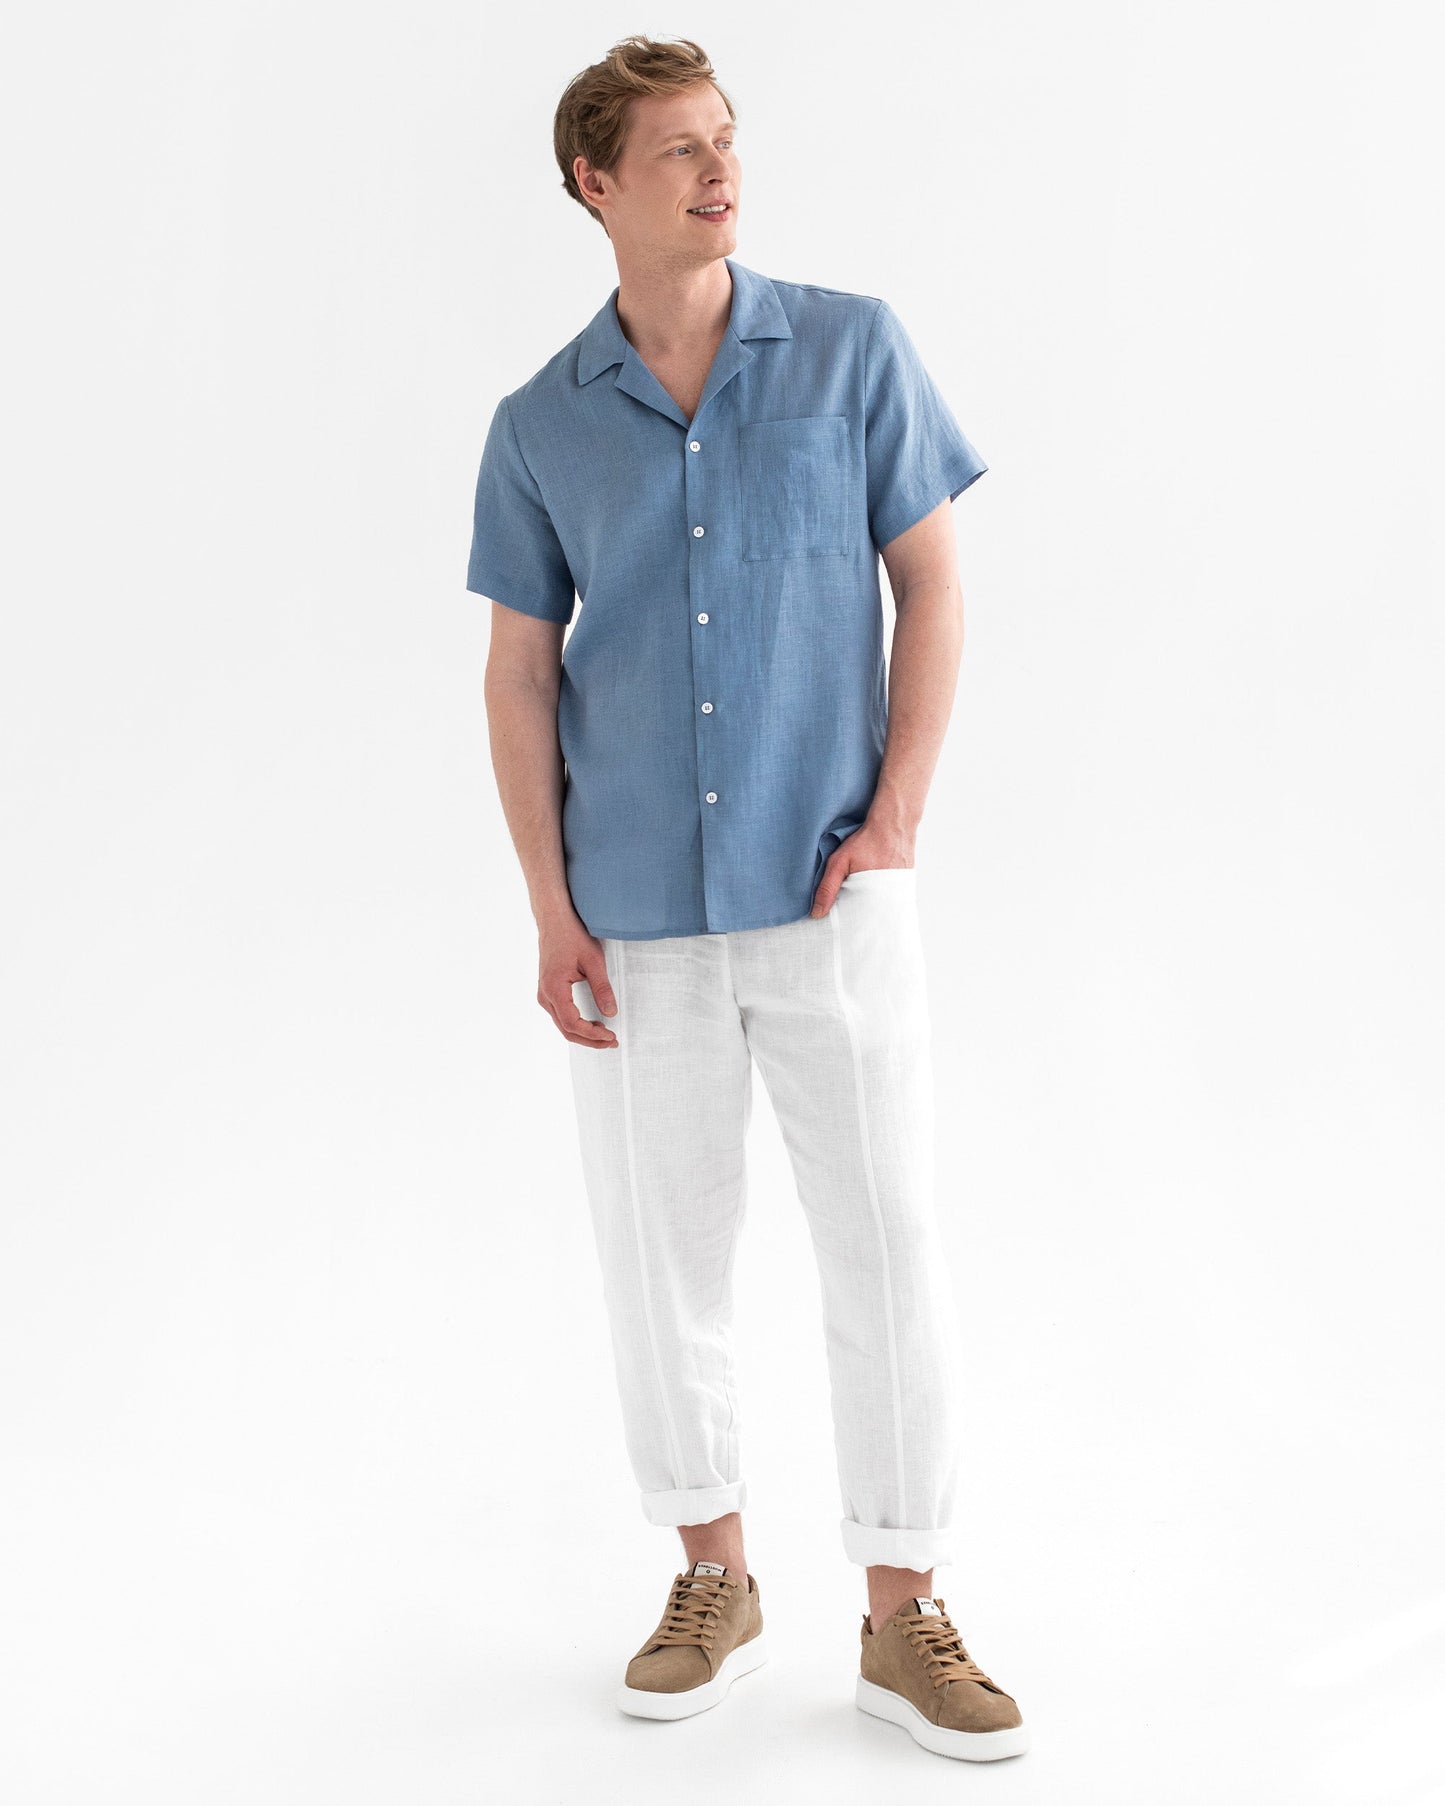 Short-sleeved breezy men's linen shirt HAWI in Ocean blue - MagicLinen